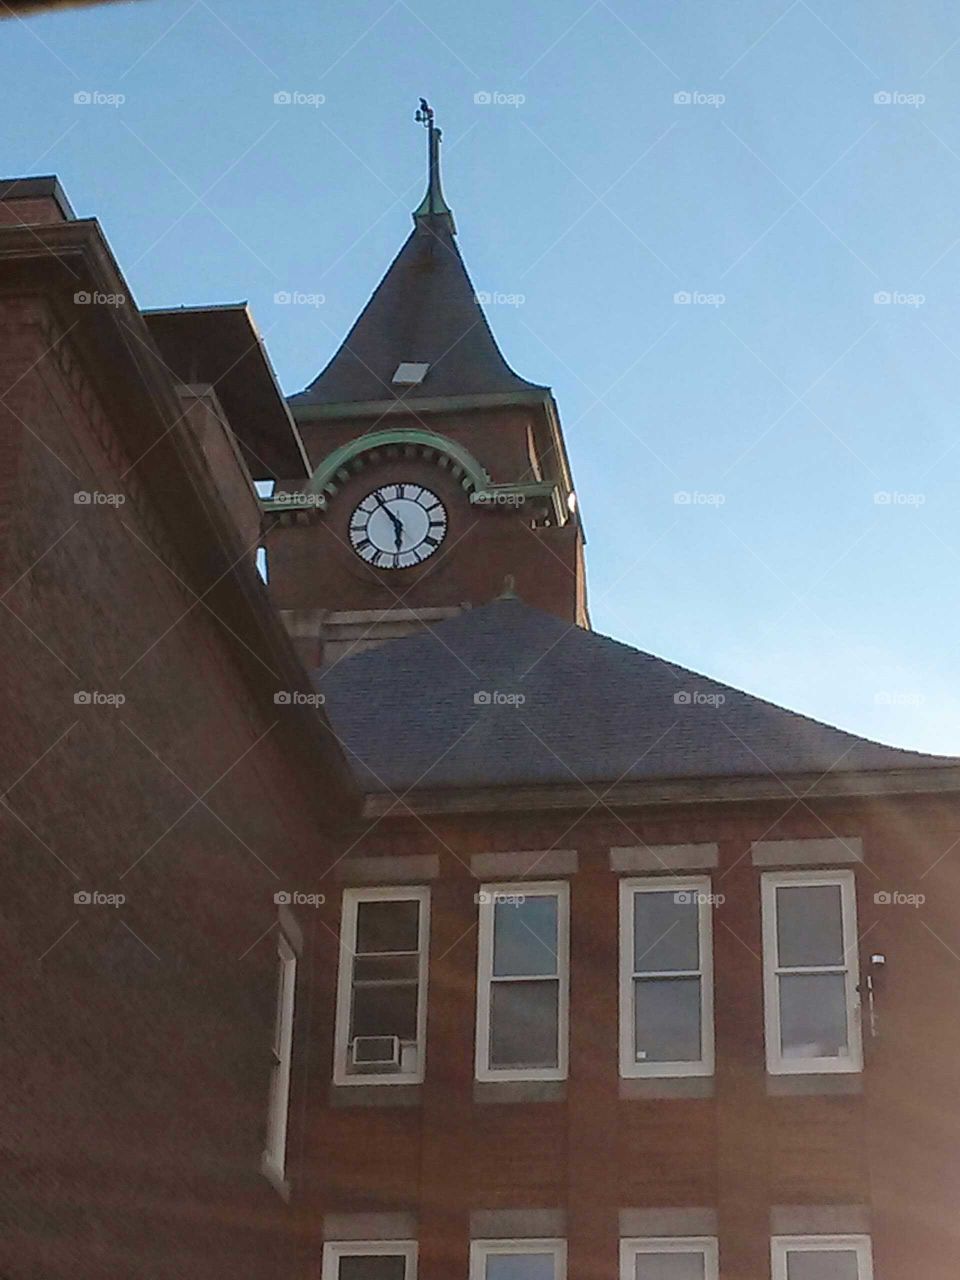 school clocktower